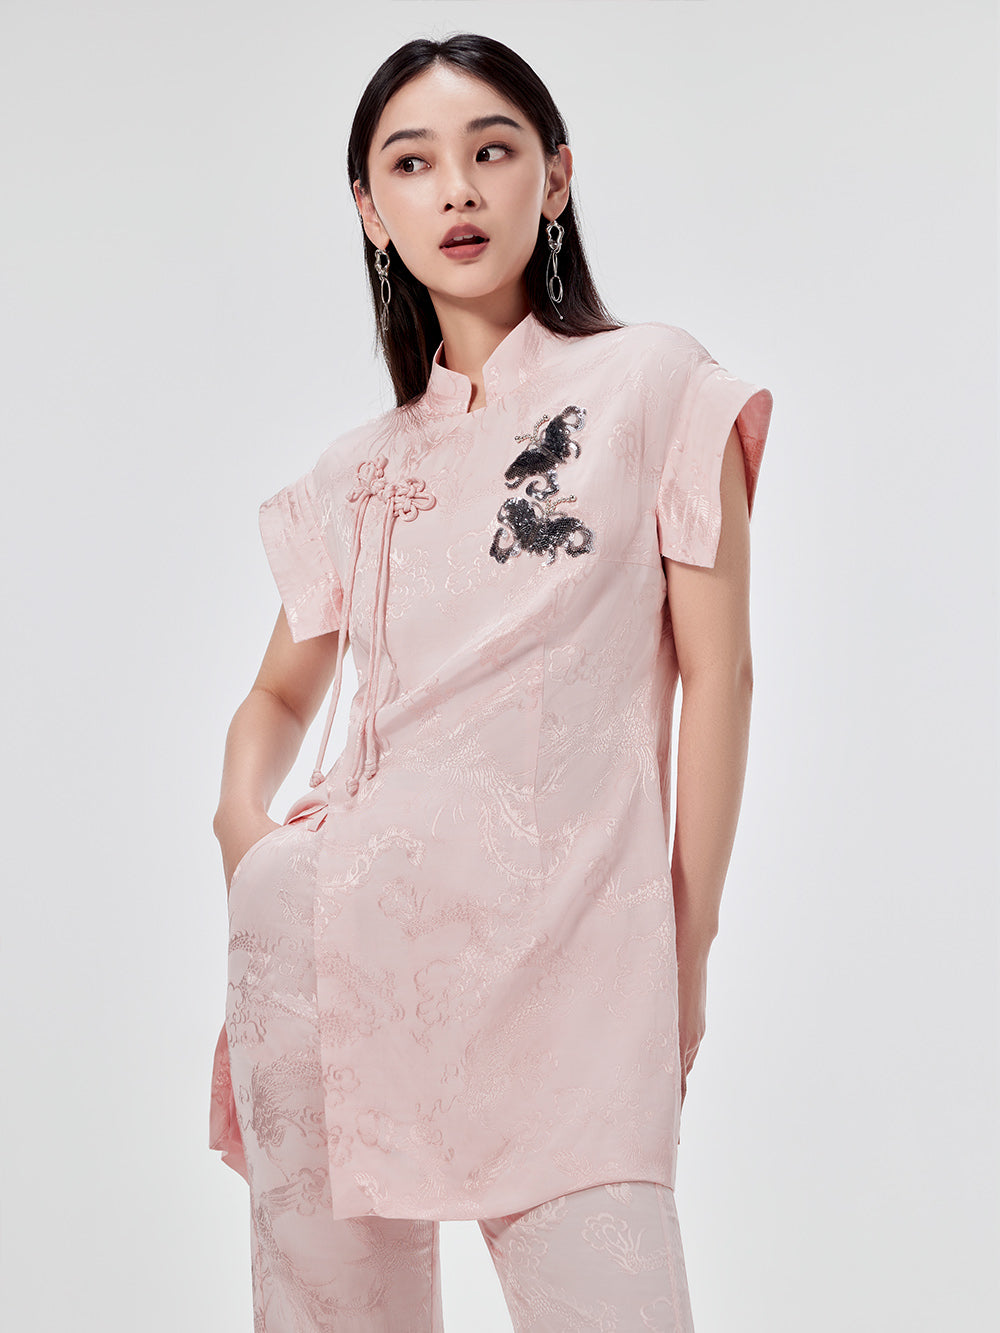 MUKZIN Chinese Cheongsam Design Sleeveless T-shirt